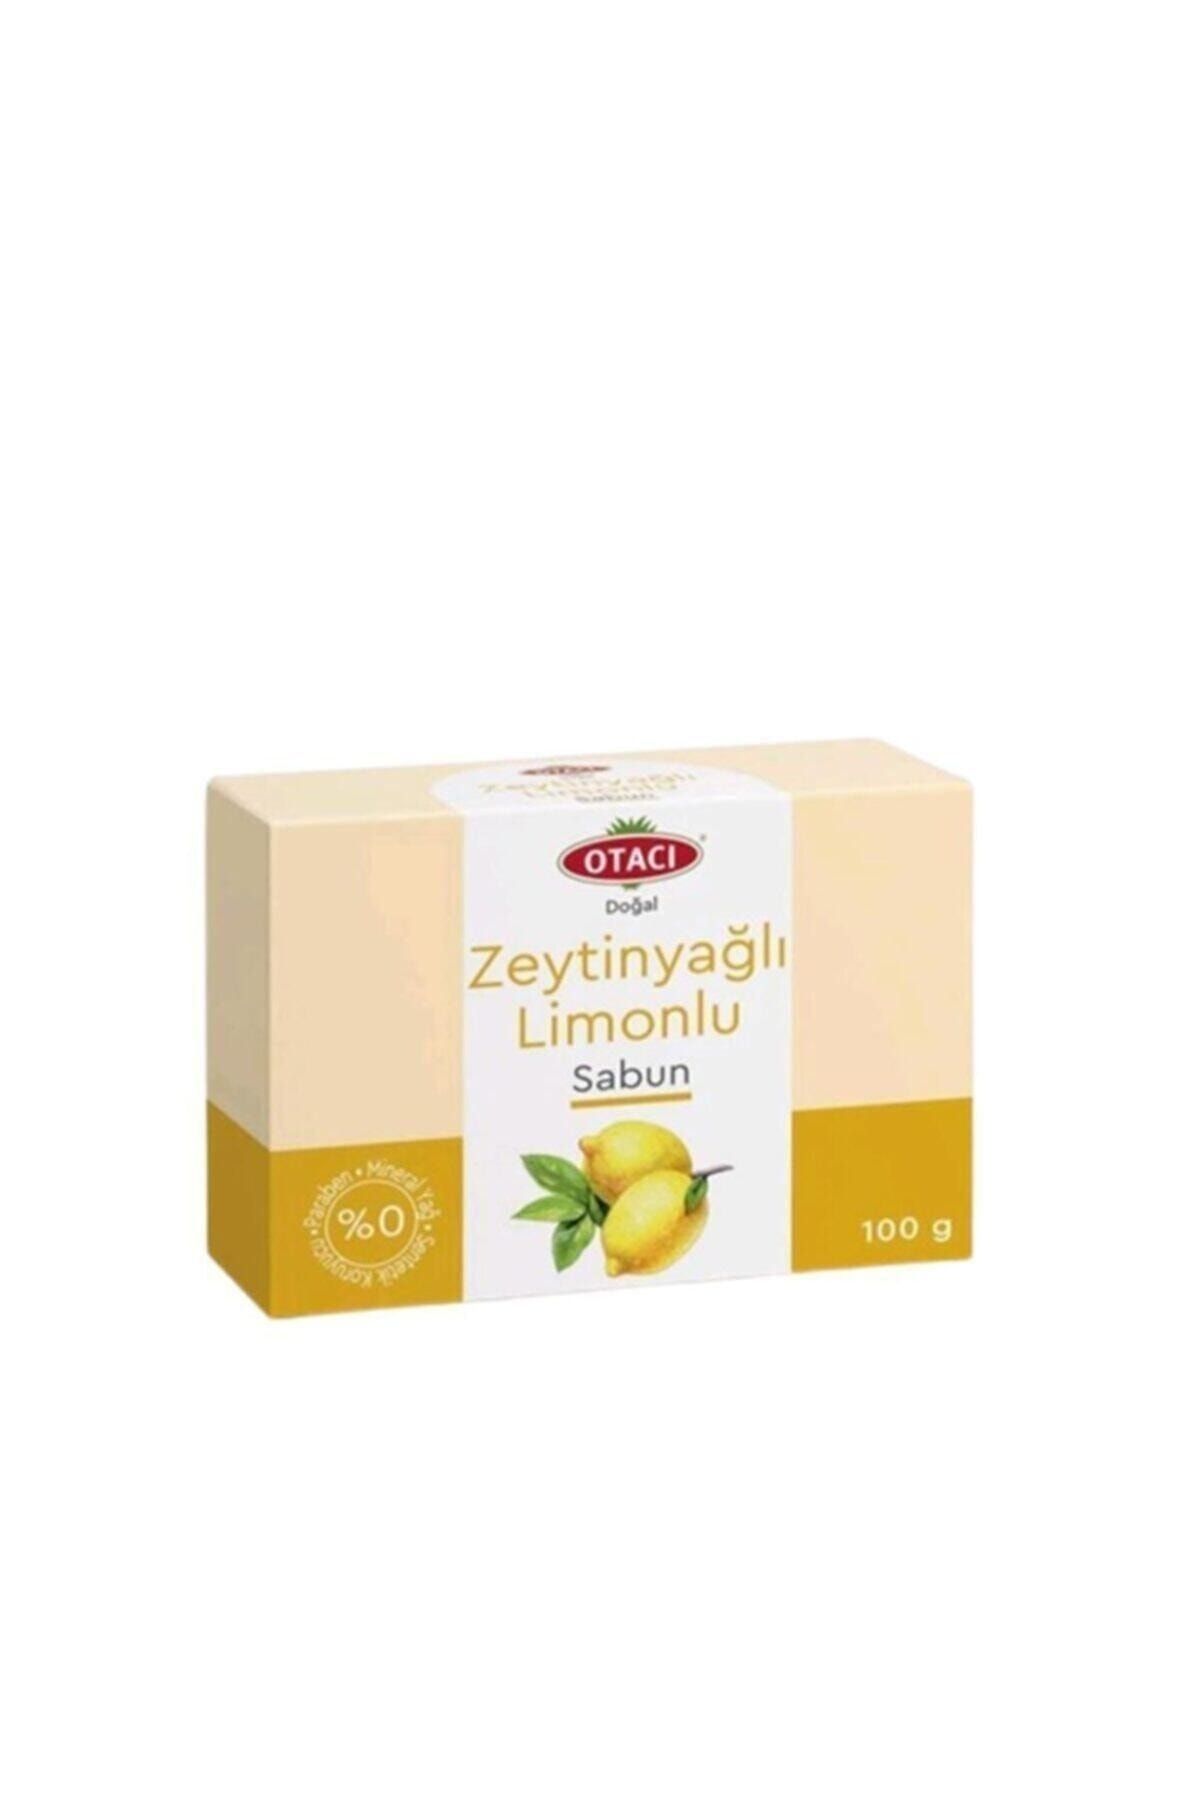 Otacı Otaci Doğal Sabun Limonlu Zeytinyağlı 100 gr